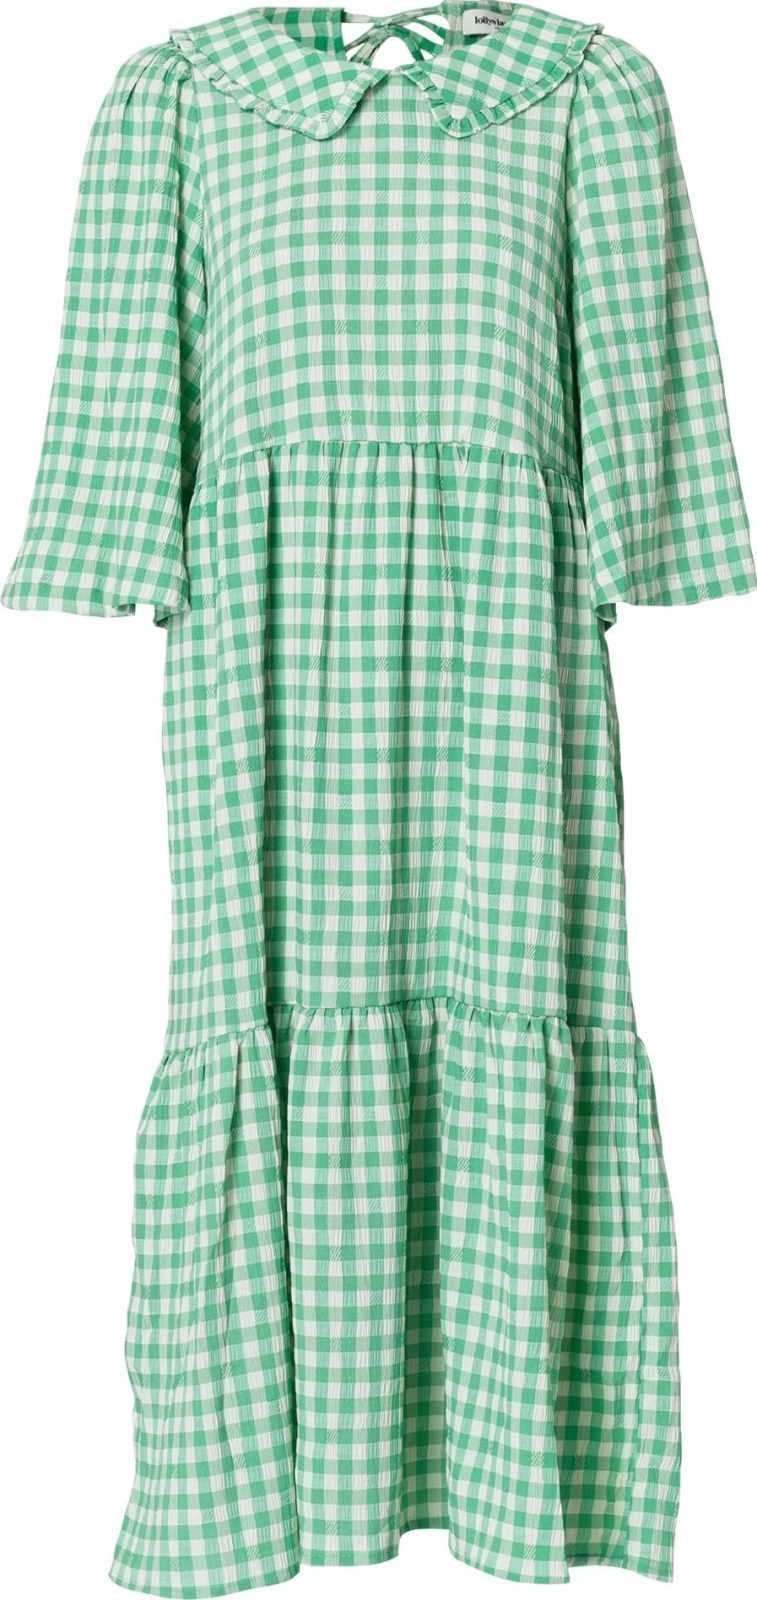 Lollys Laundry Košilové šaty 'Sonya' zelená / bílá